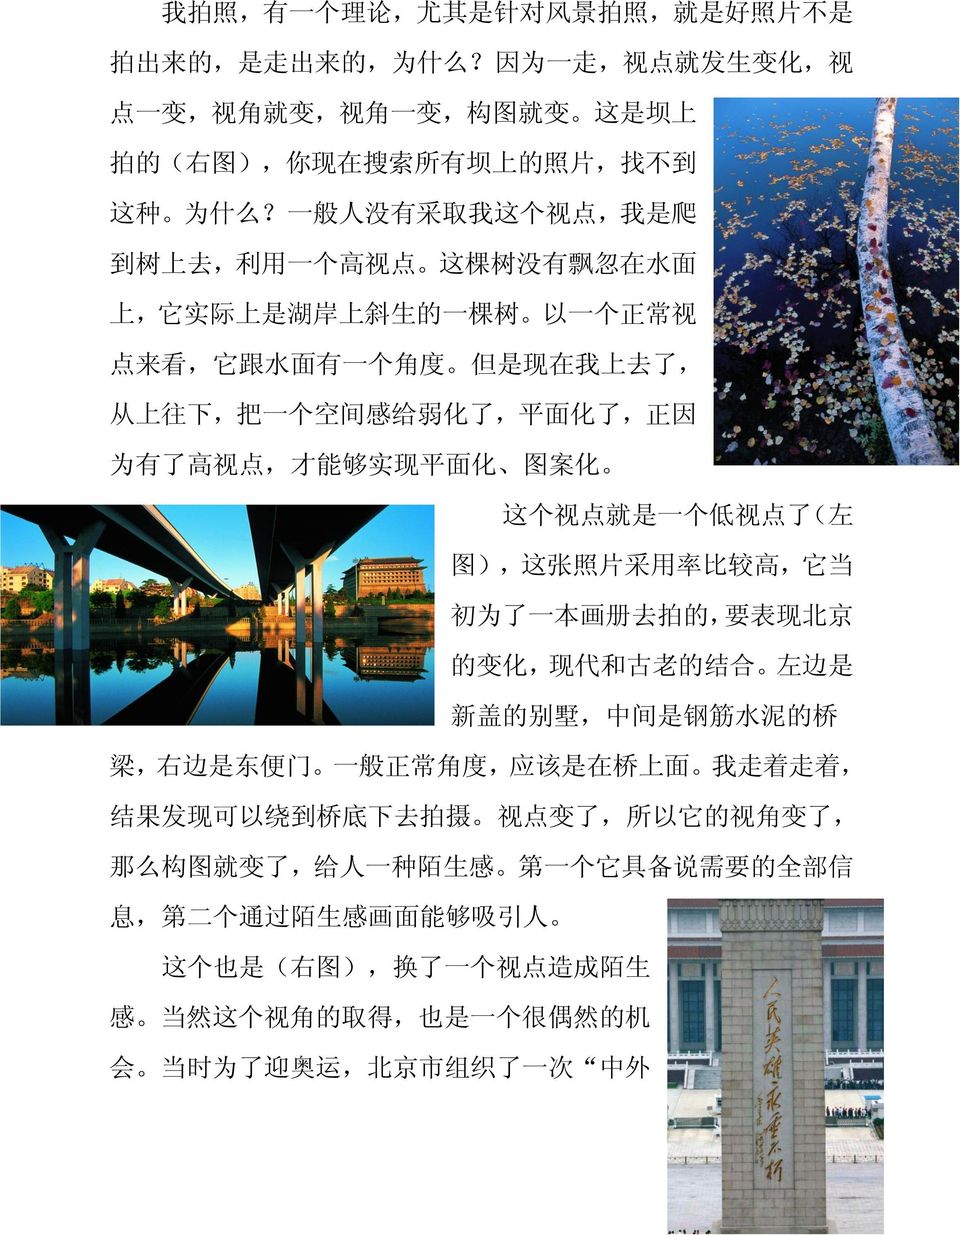 因 为 有 了 高 视 点, 才 能 够 实 现 平 面 化 图 案 化 这 个 视 点 就 是 一 个 低 视 点 了 ( 左 图 ), 这 张 照 片 采 用 率 比 较 高, 它 当 初 为 了 一 本 画 册 去 拍 的, 要 表 现 北 京 的 变 化, 现 代 和 古 老 的 结 合 左 边 是 新 盖 的 别 墅, 中 间 是 钢 筋 水 泥 的 桥 梁, 右 边 是 东 便 门